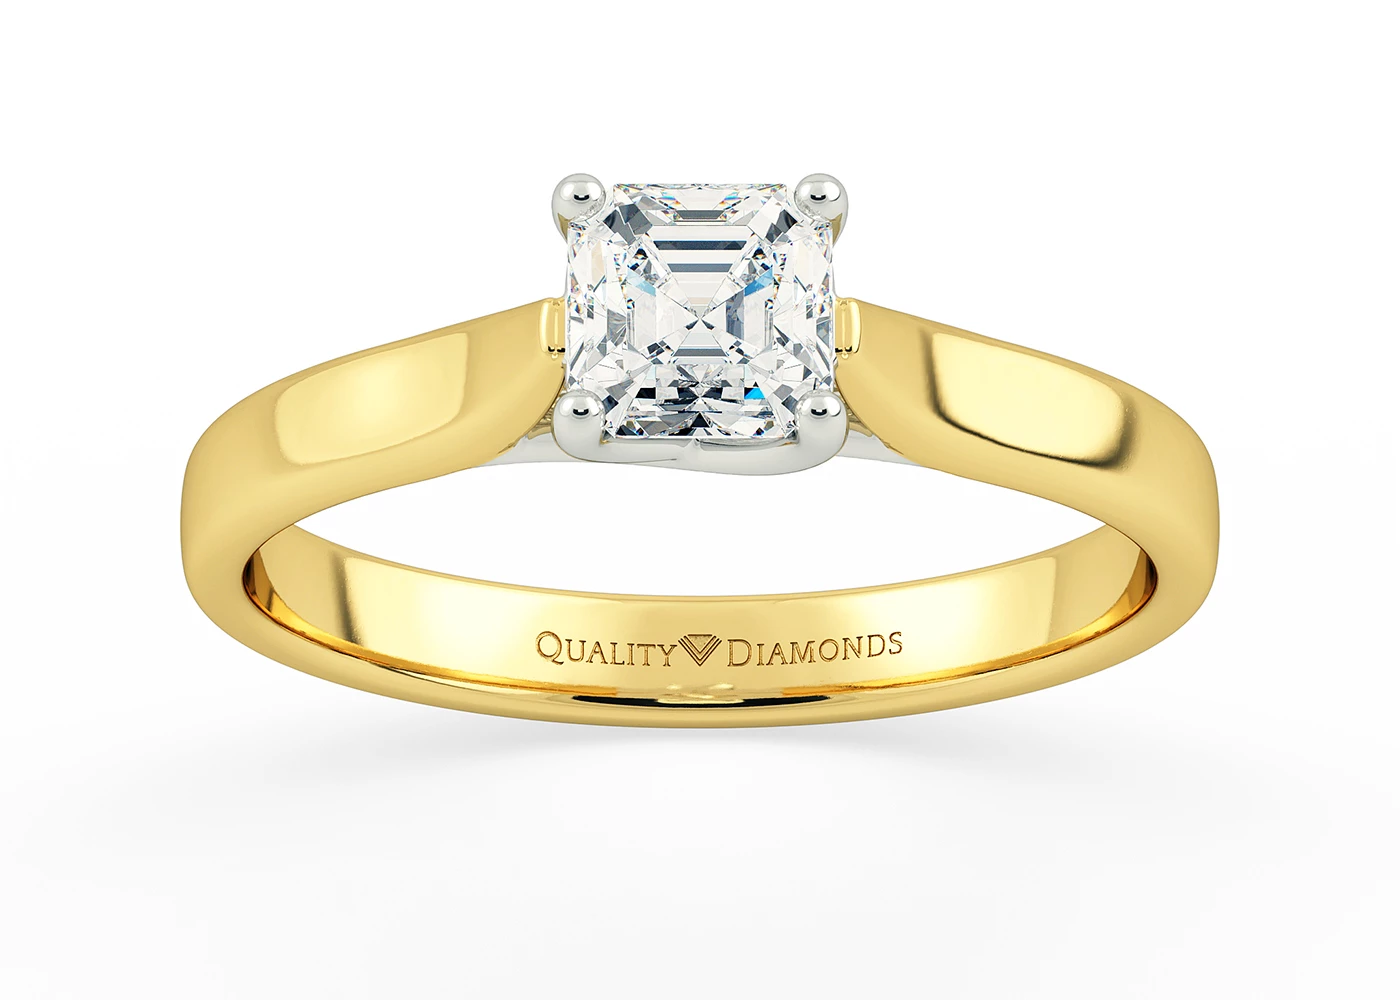 Asscher Mirabelle Diamond Ring in 18K Yellow Gold